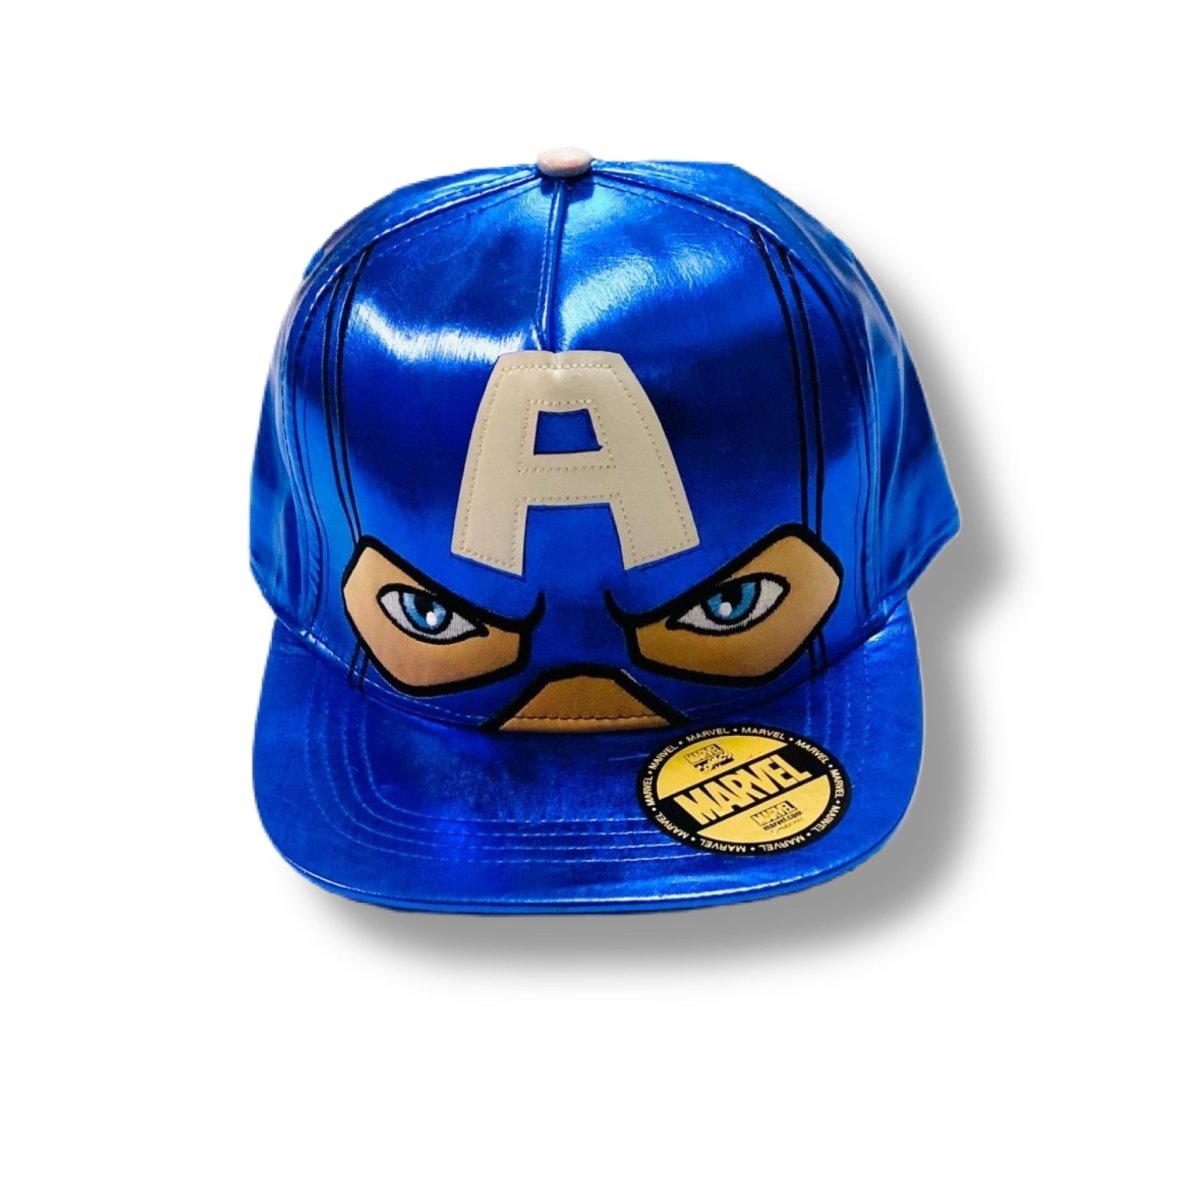 Berretto Avengers Capitan America 4/12 Anni - Mstore016 - Berretto Avengers - Disney